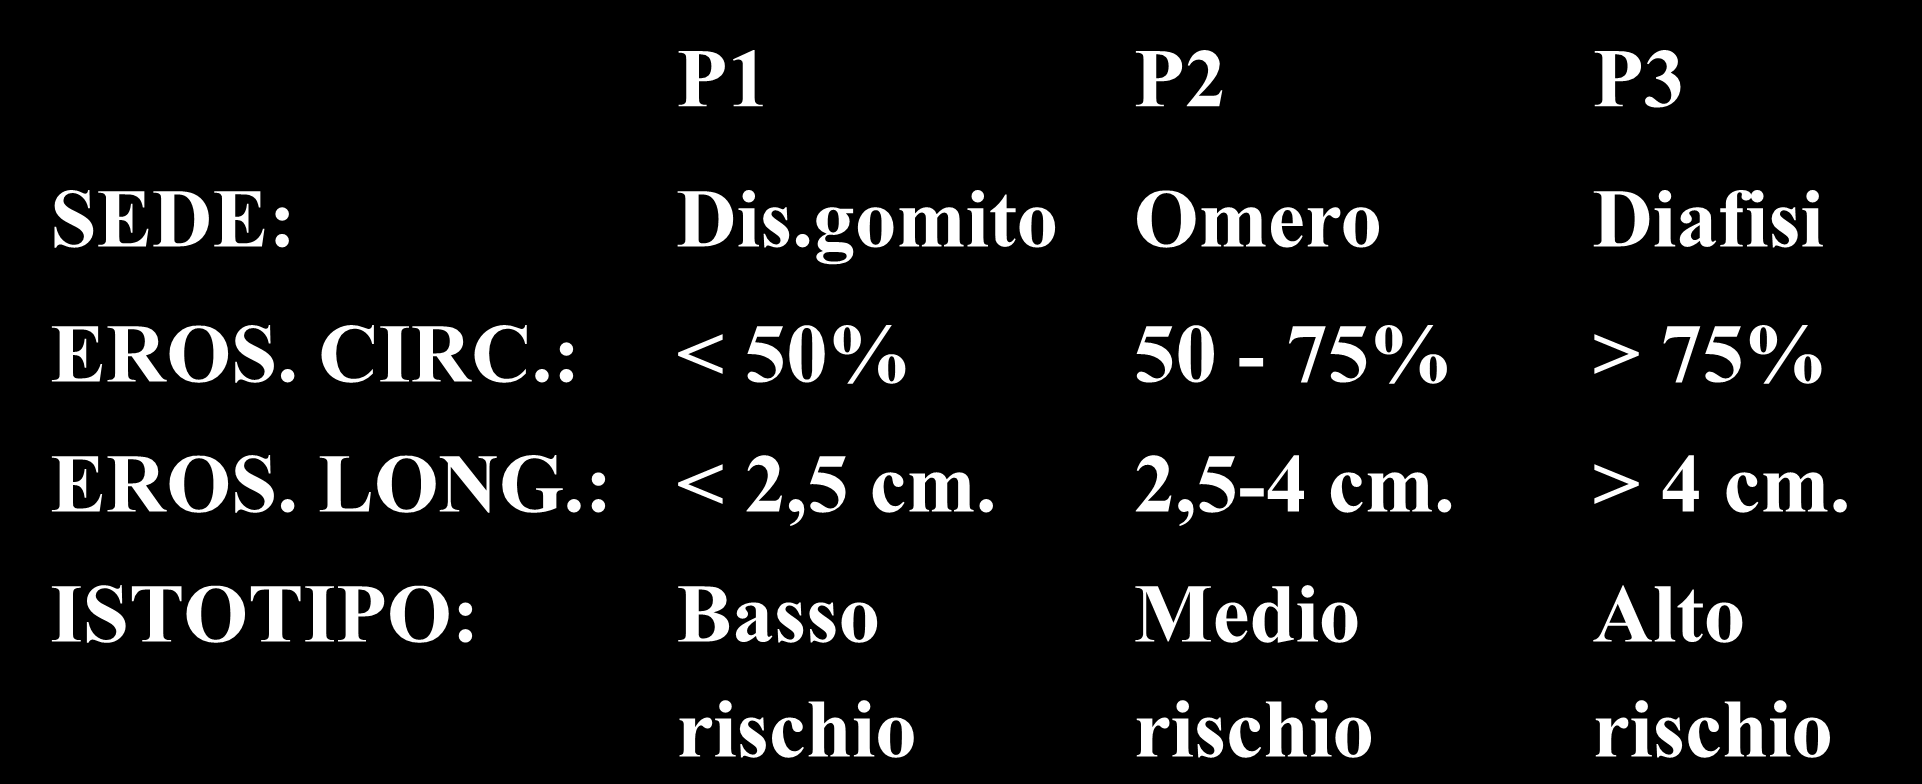 Sistema multifattoriale I.O.R. (arto superiore) P1 P2 P3 SEDE: Dis.gomito Omero Diafisi EROS. CIRC.